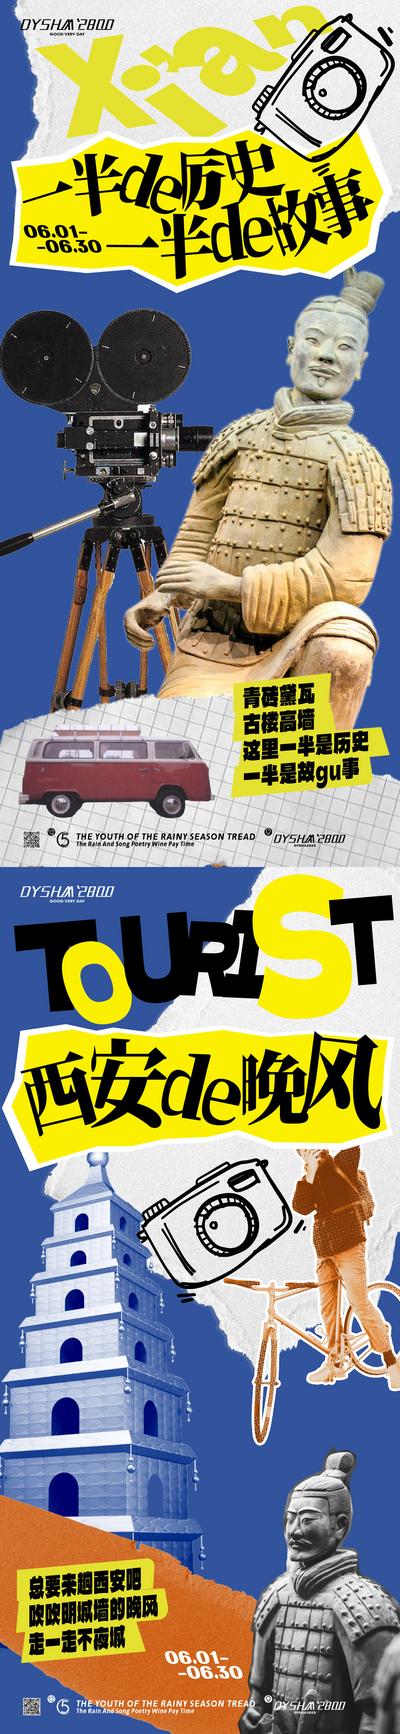 南门网 广告 海报 文旅 兵马俑 旅游 西安 古董 旅行 拍照 网红城市 系列